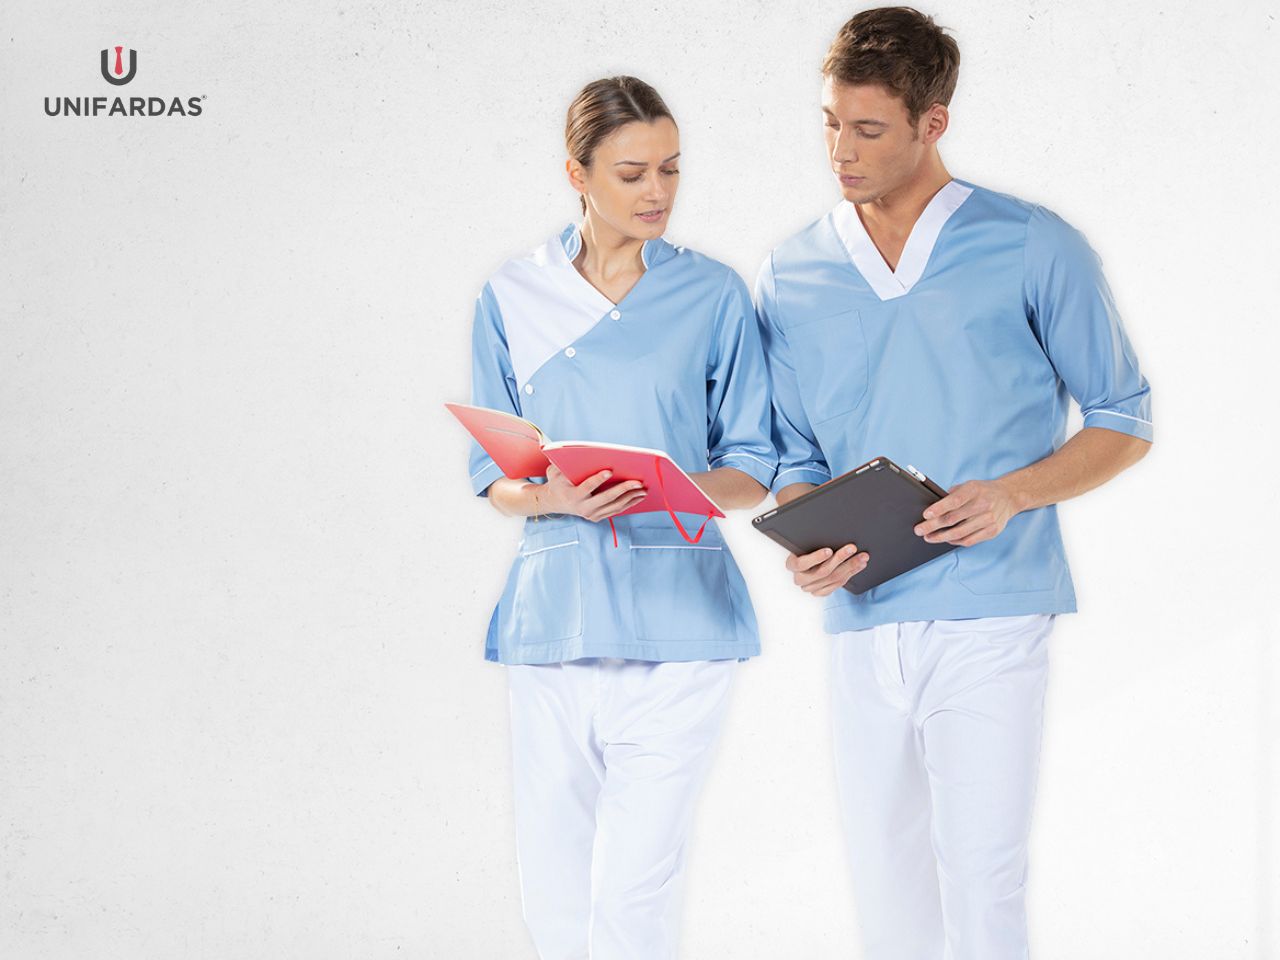 Enfermeiros vestidos com uma túnica azul e uma calça branca para serem usadas como fardas médicas fabricadas pela Unifardas